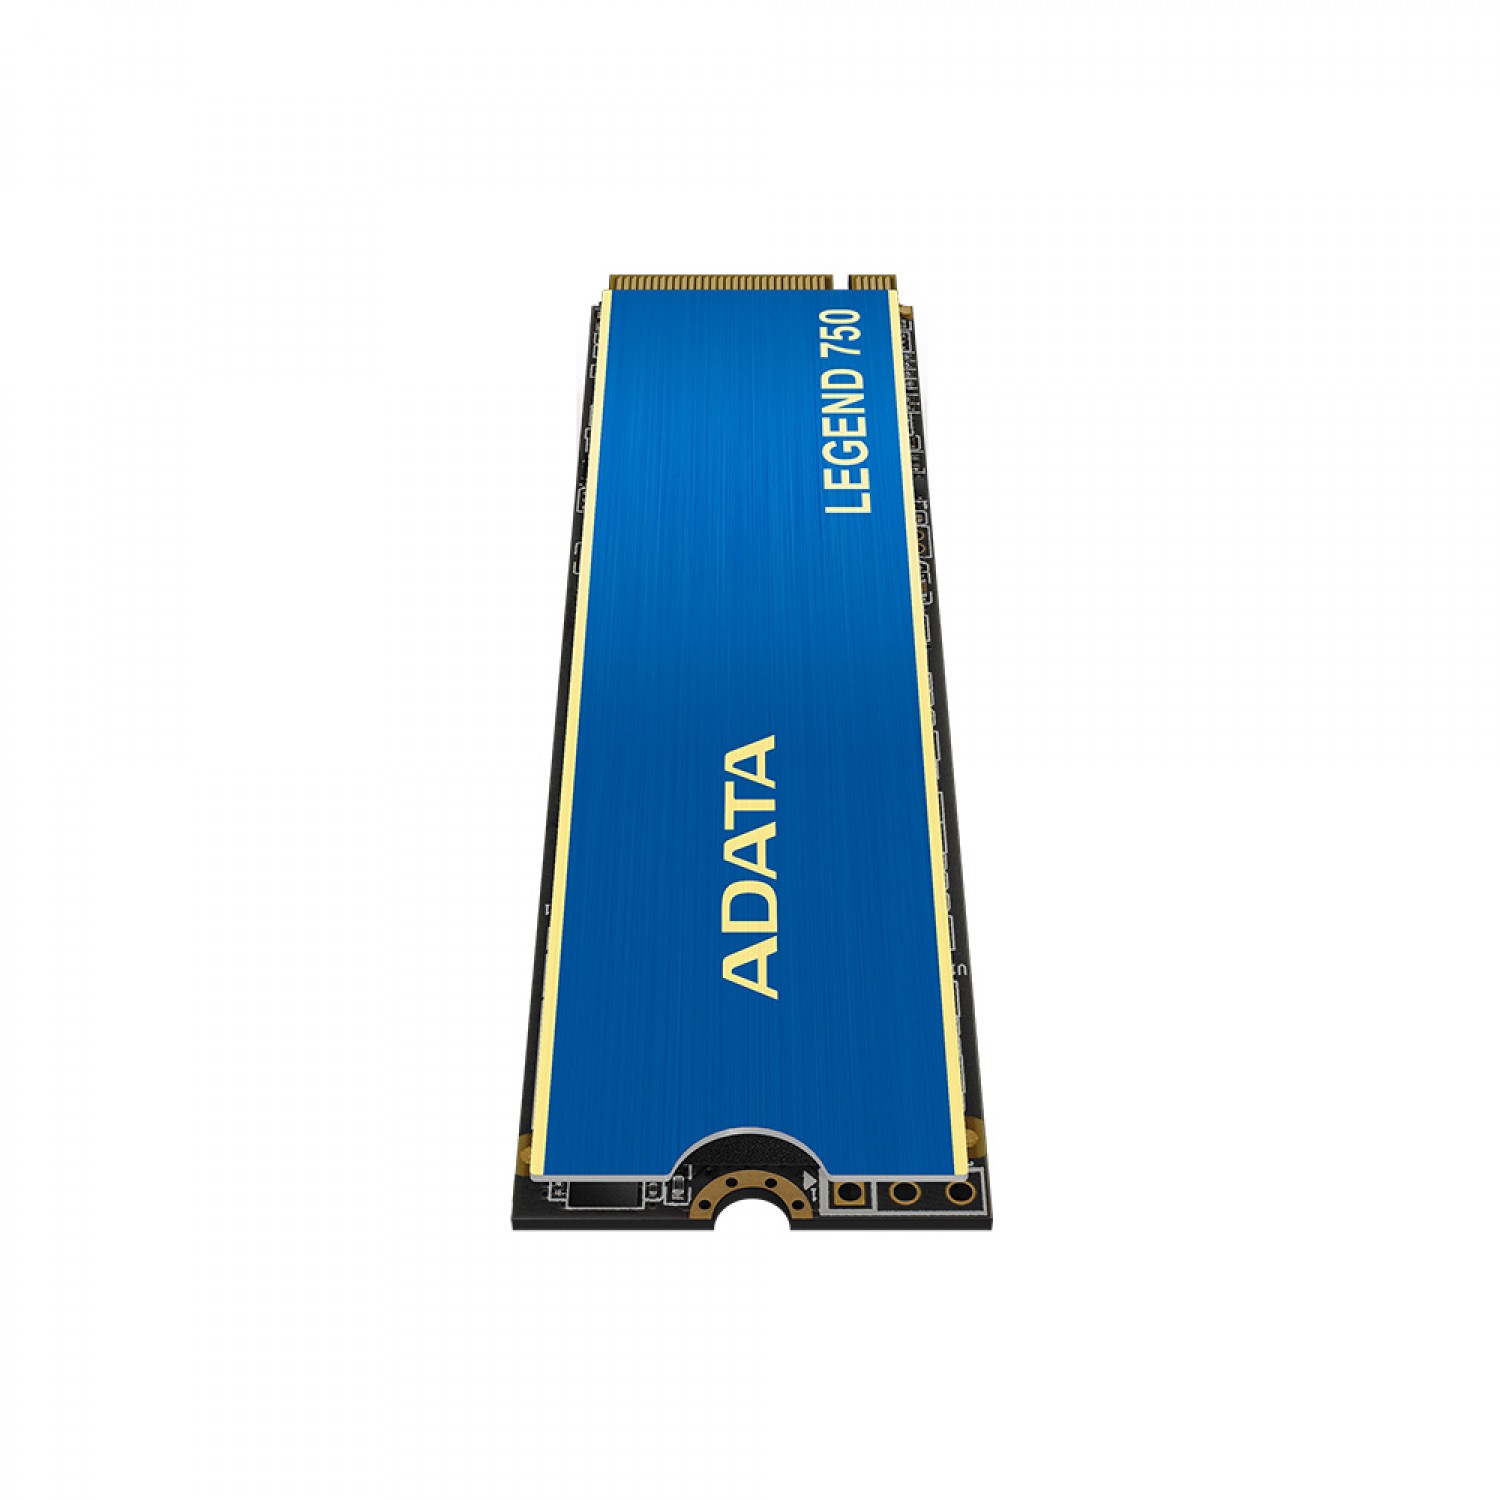 حافظه اس اس دی ADATA Legend 750 1TB-2